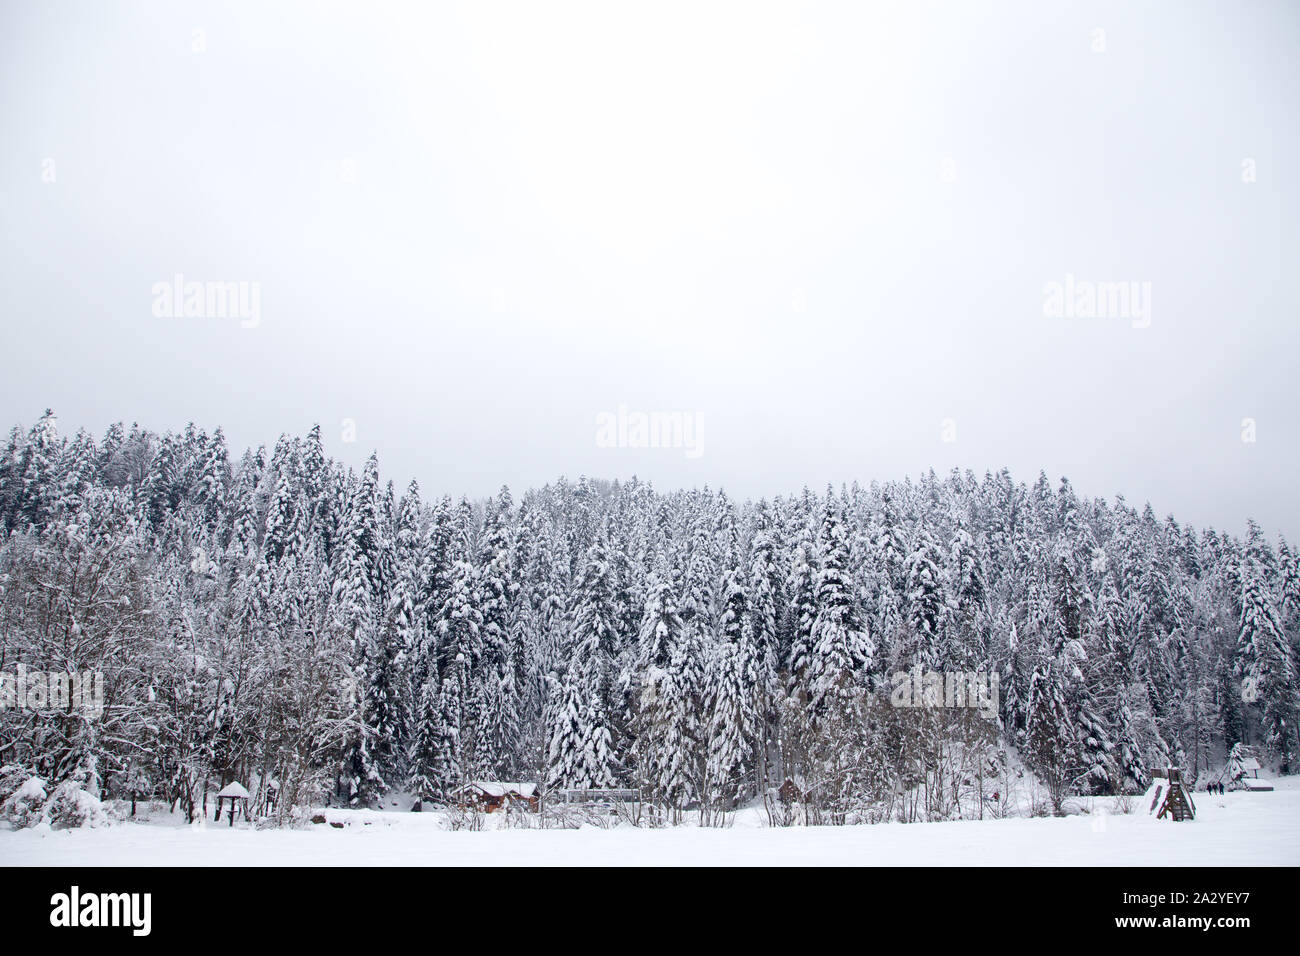 Fond de Noël avec les sapins enneigés. Beau paysage de montagne d'hiver. Banque D'Images